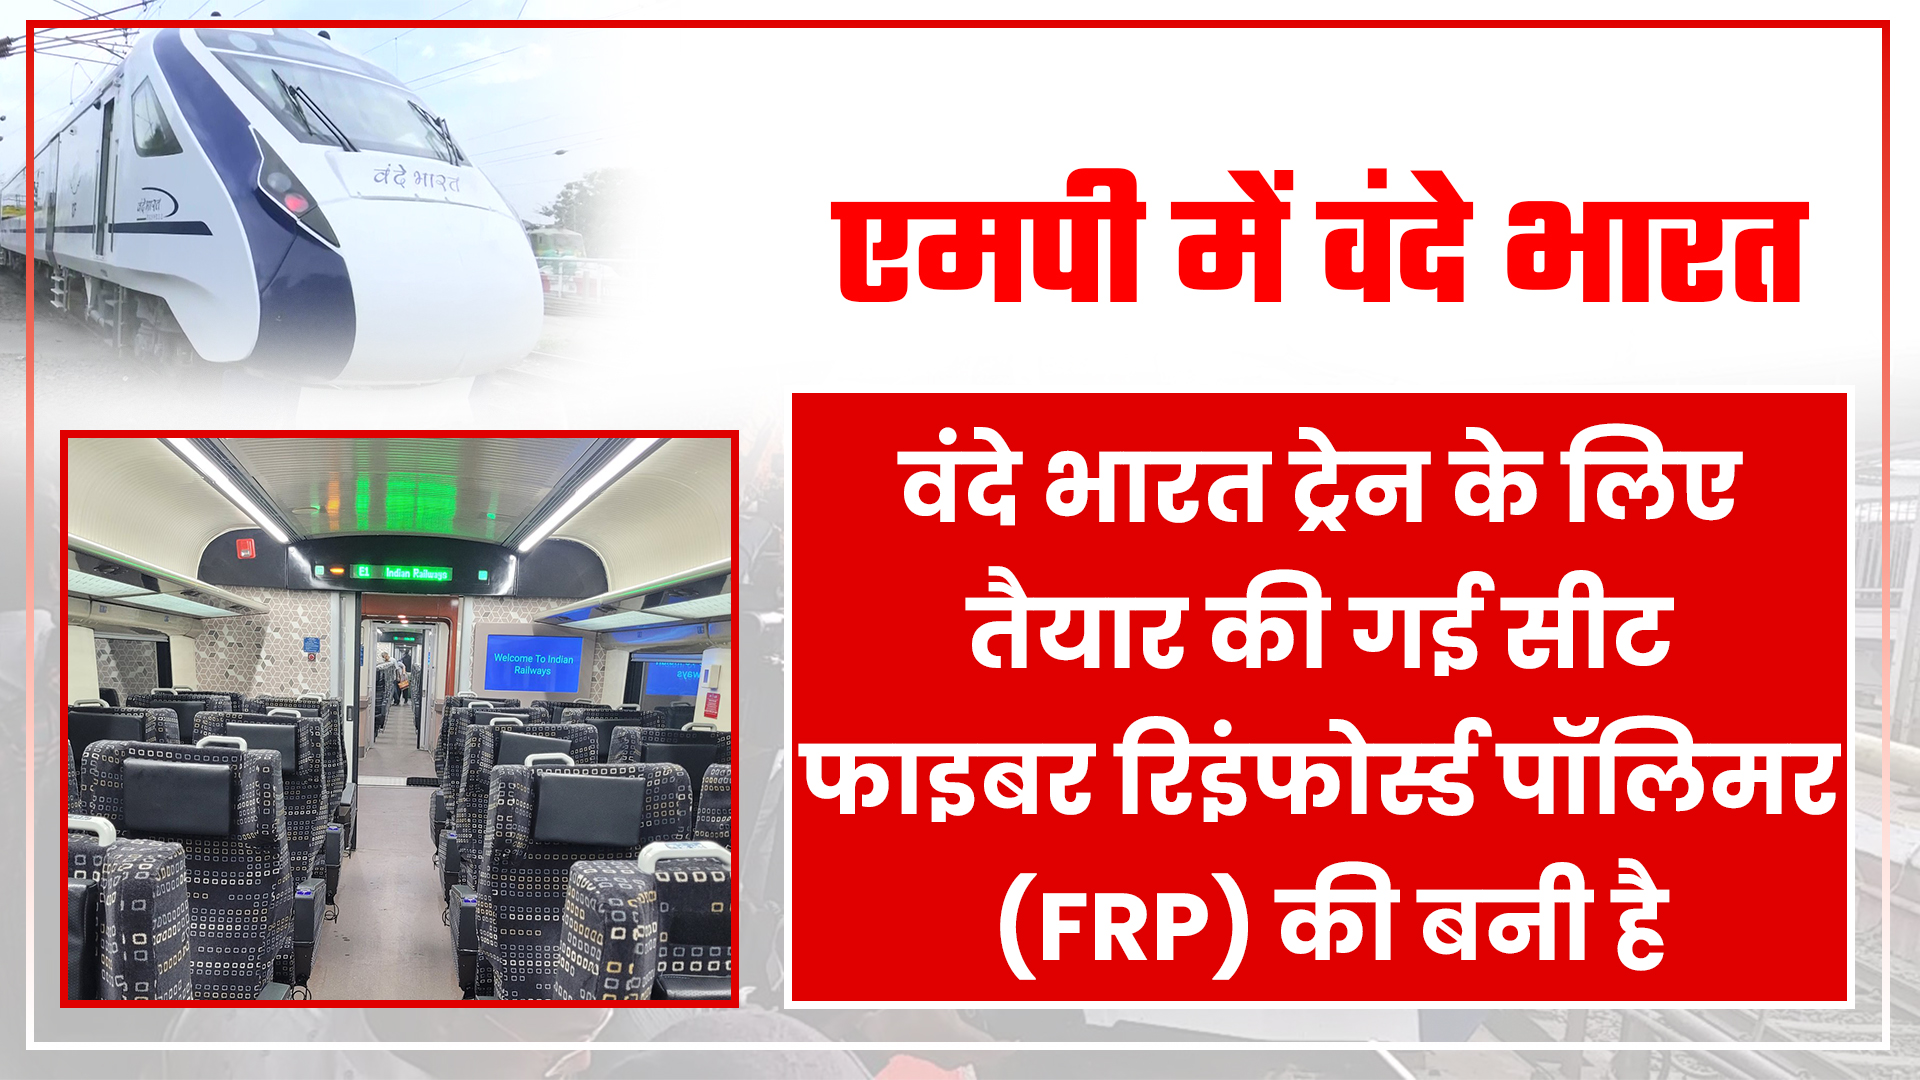 वंदे भारत ट्रेन के लिए तैयार की गई सीट फाइबर रिइंफोर्स्ड पॉलिमर (FRP) की बनी है